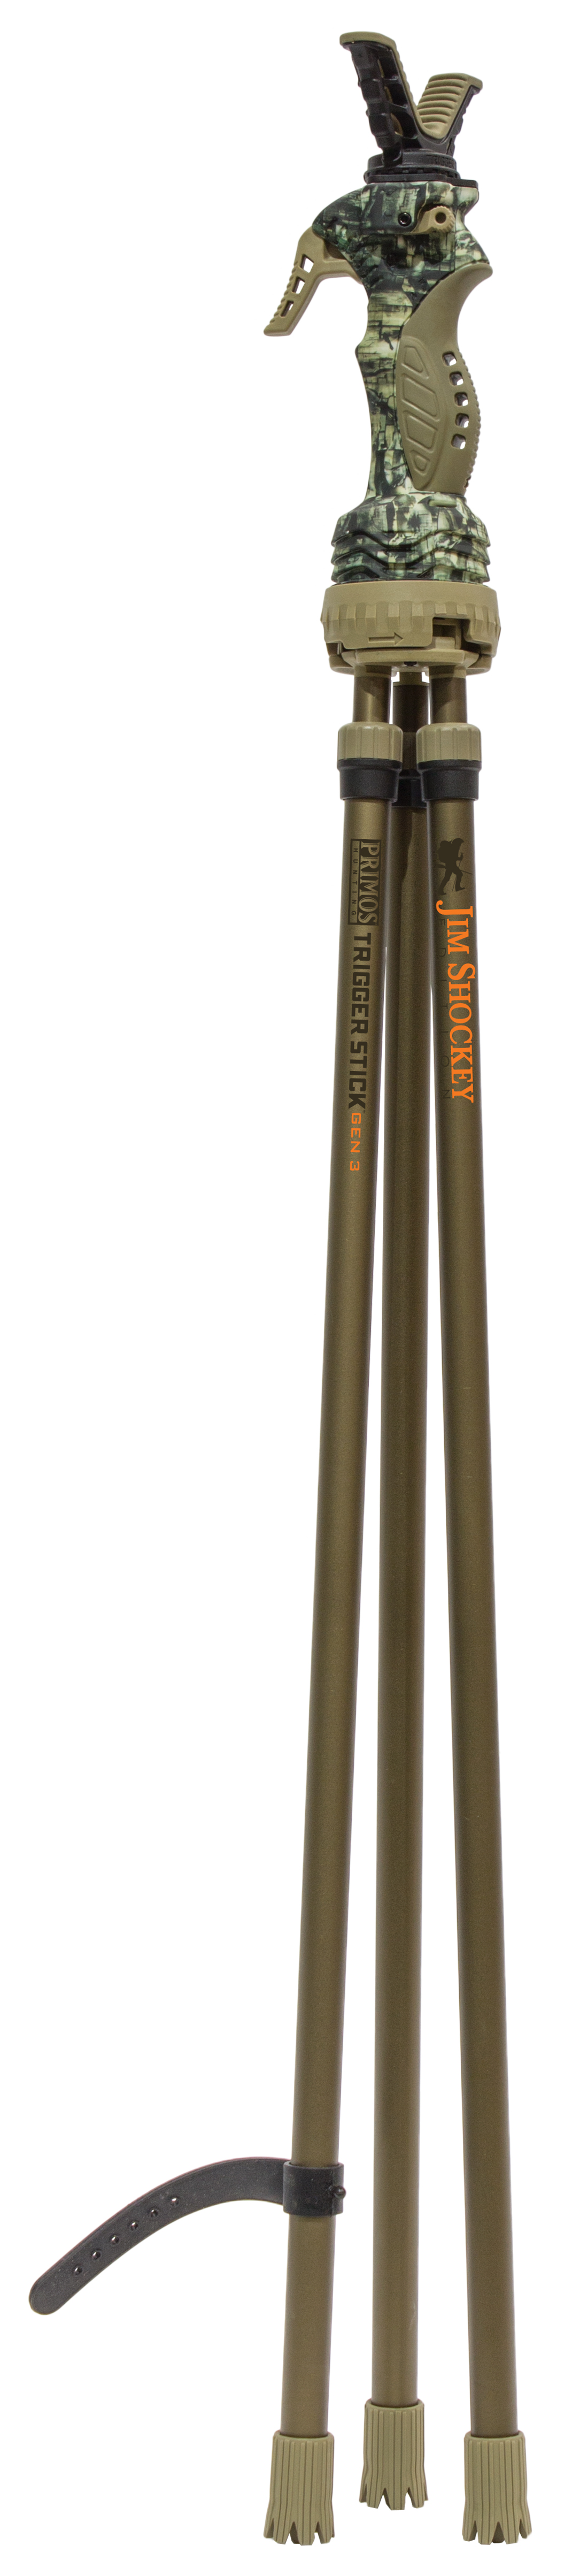 Image of Primos Trigger Stick 3-ben Gen 3 "61-157cm"